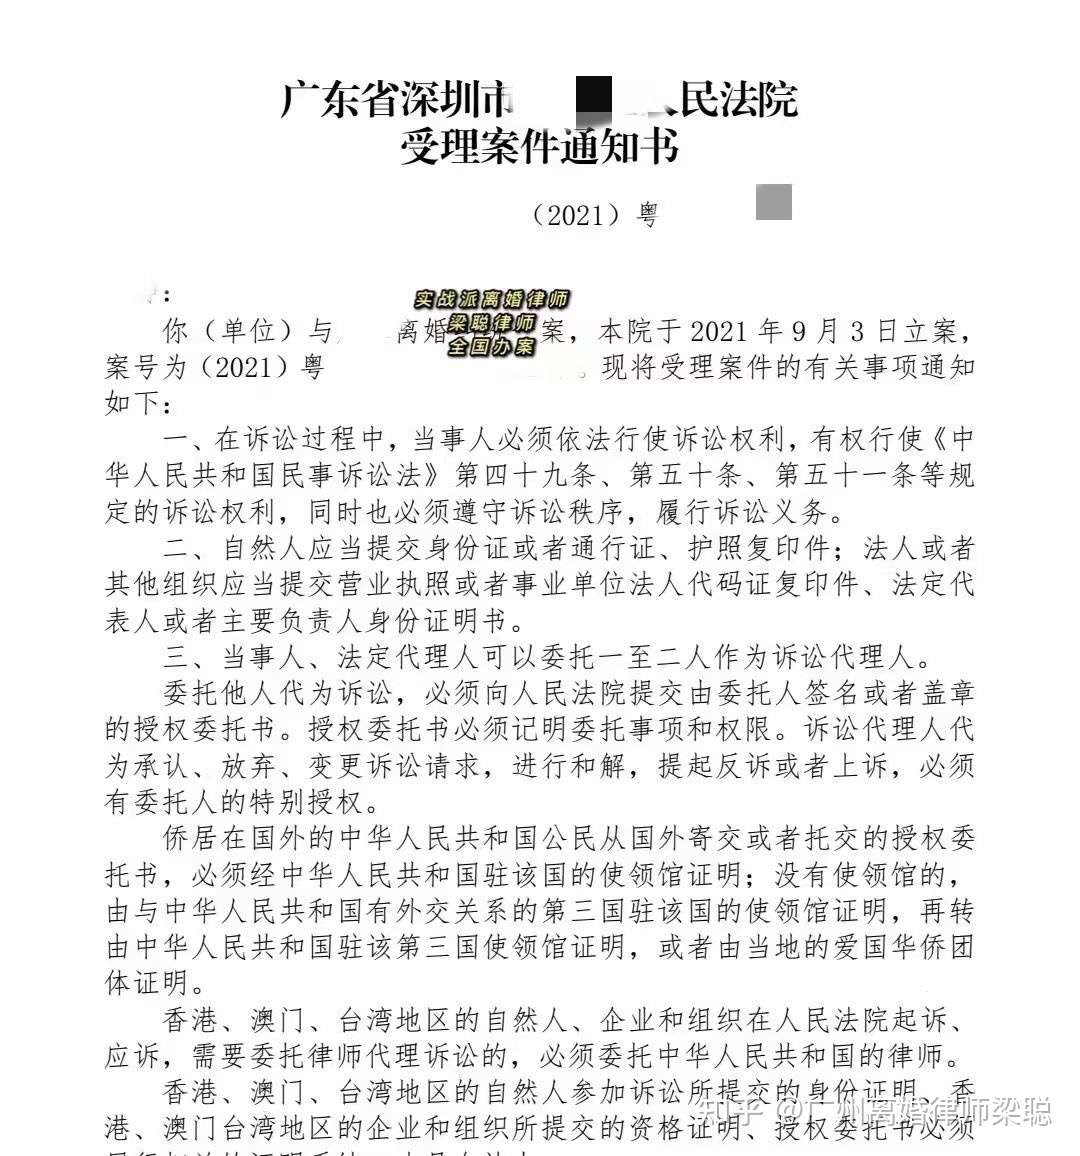 广州离婚律师梁聪 的想法: 北京和深圳的离婚案 